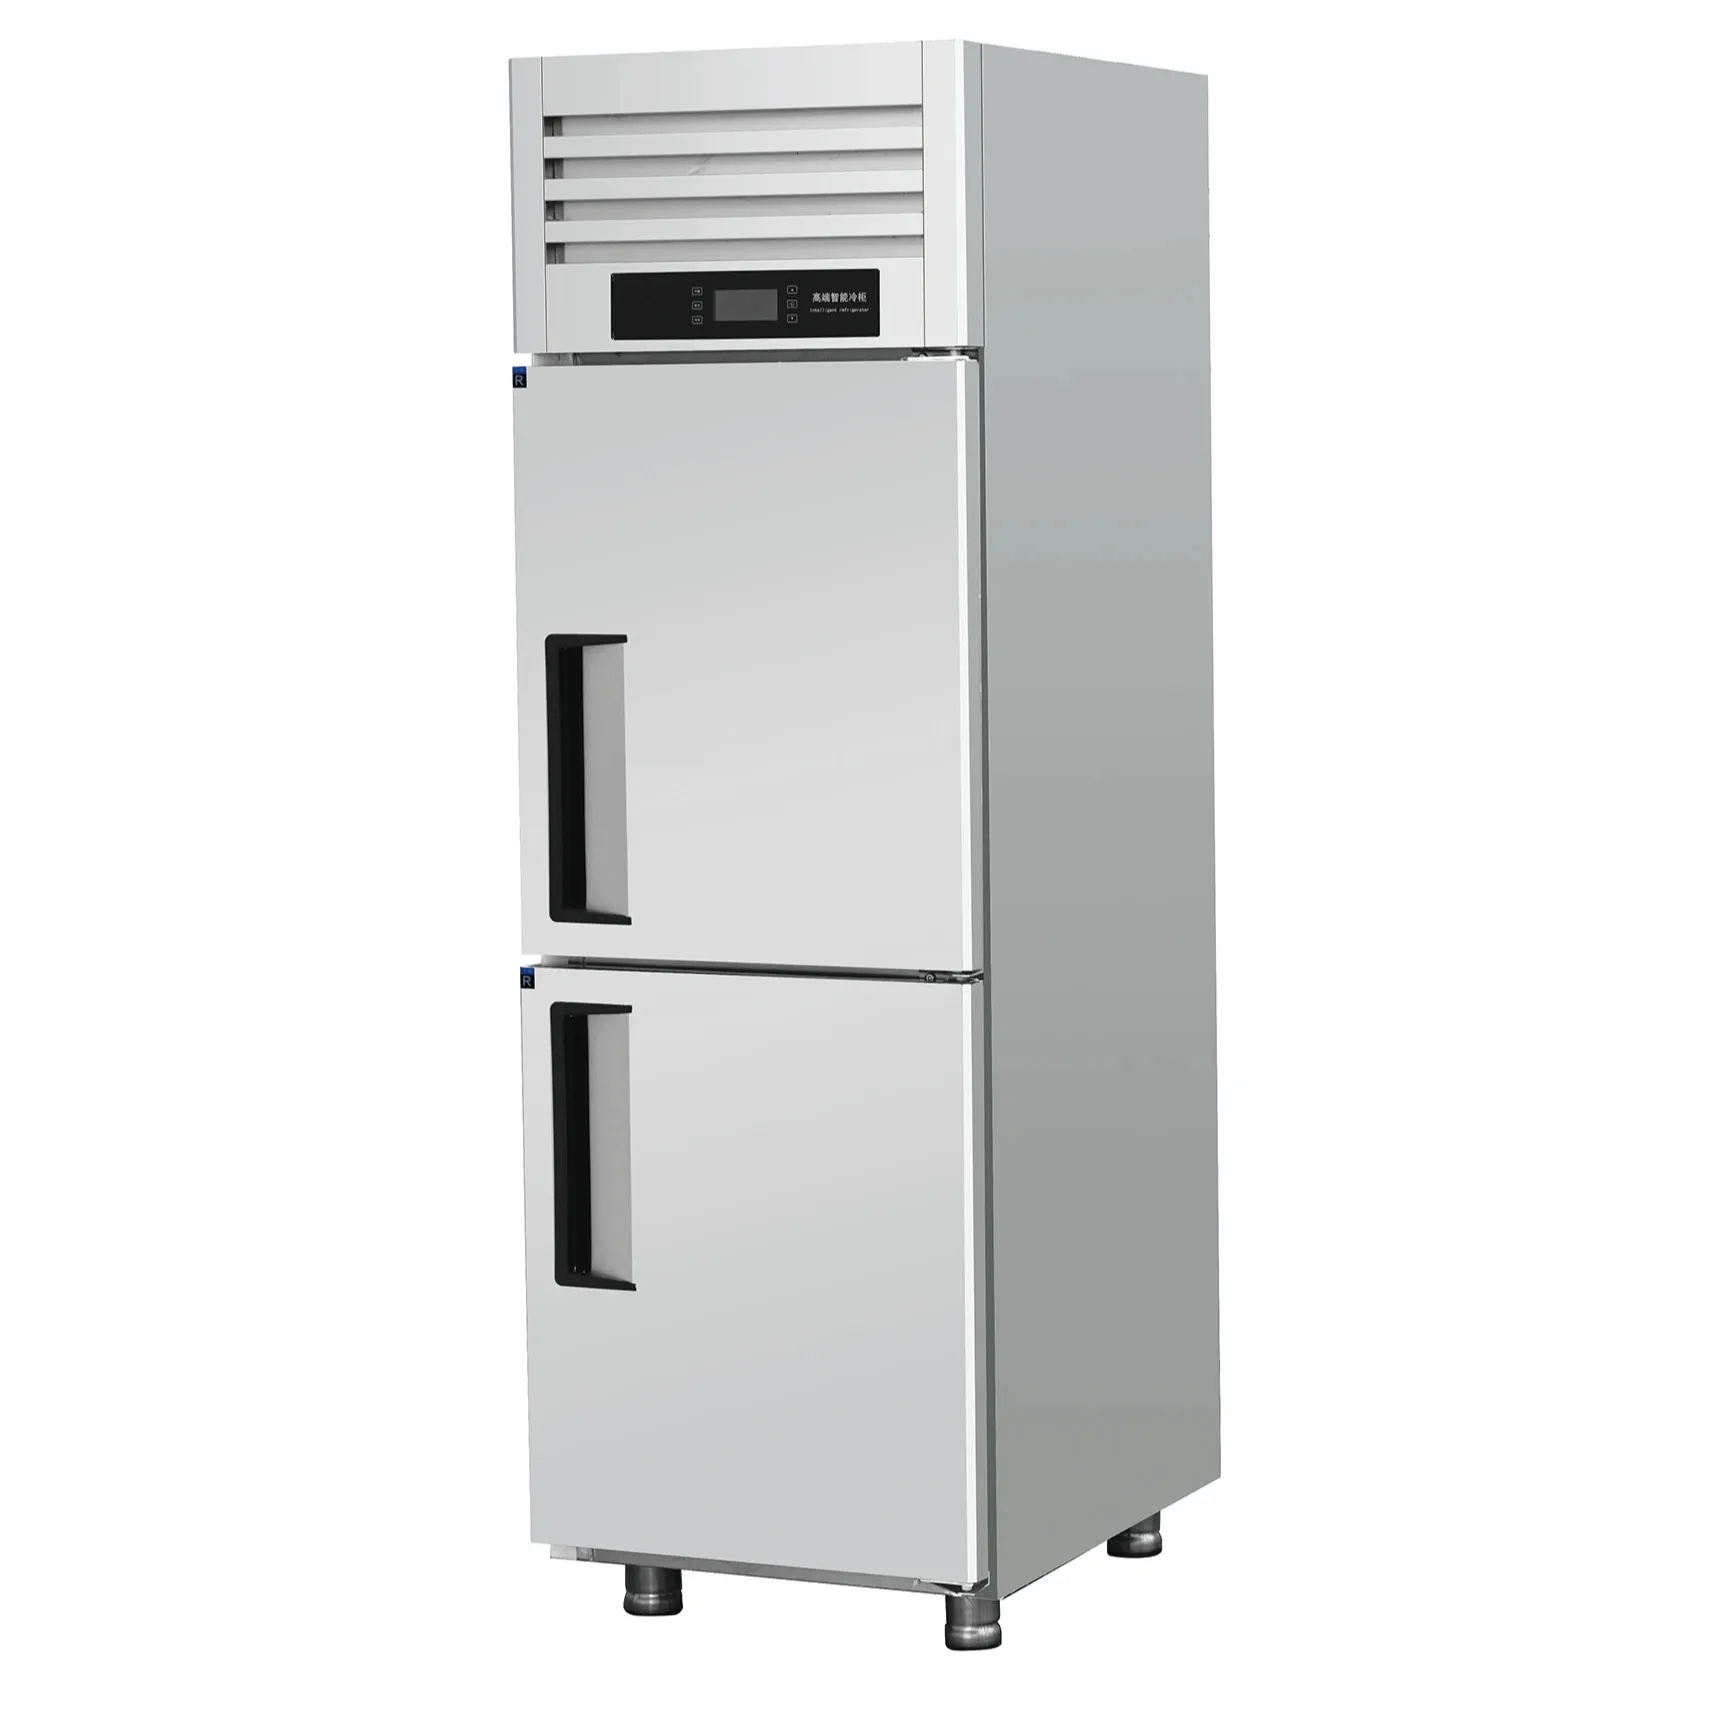 Refroidisseur vertical de qualité supérieure ventilateur horizontal refroidissement supermarché congélateur commercial cuisine acier inoxydable congélateur refroidisseur